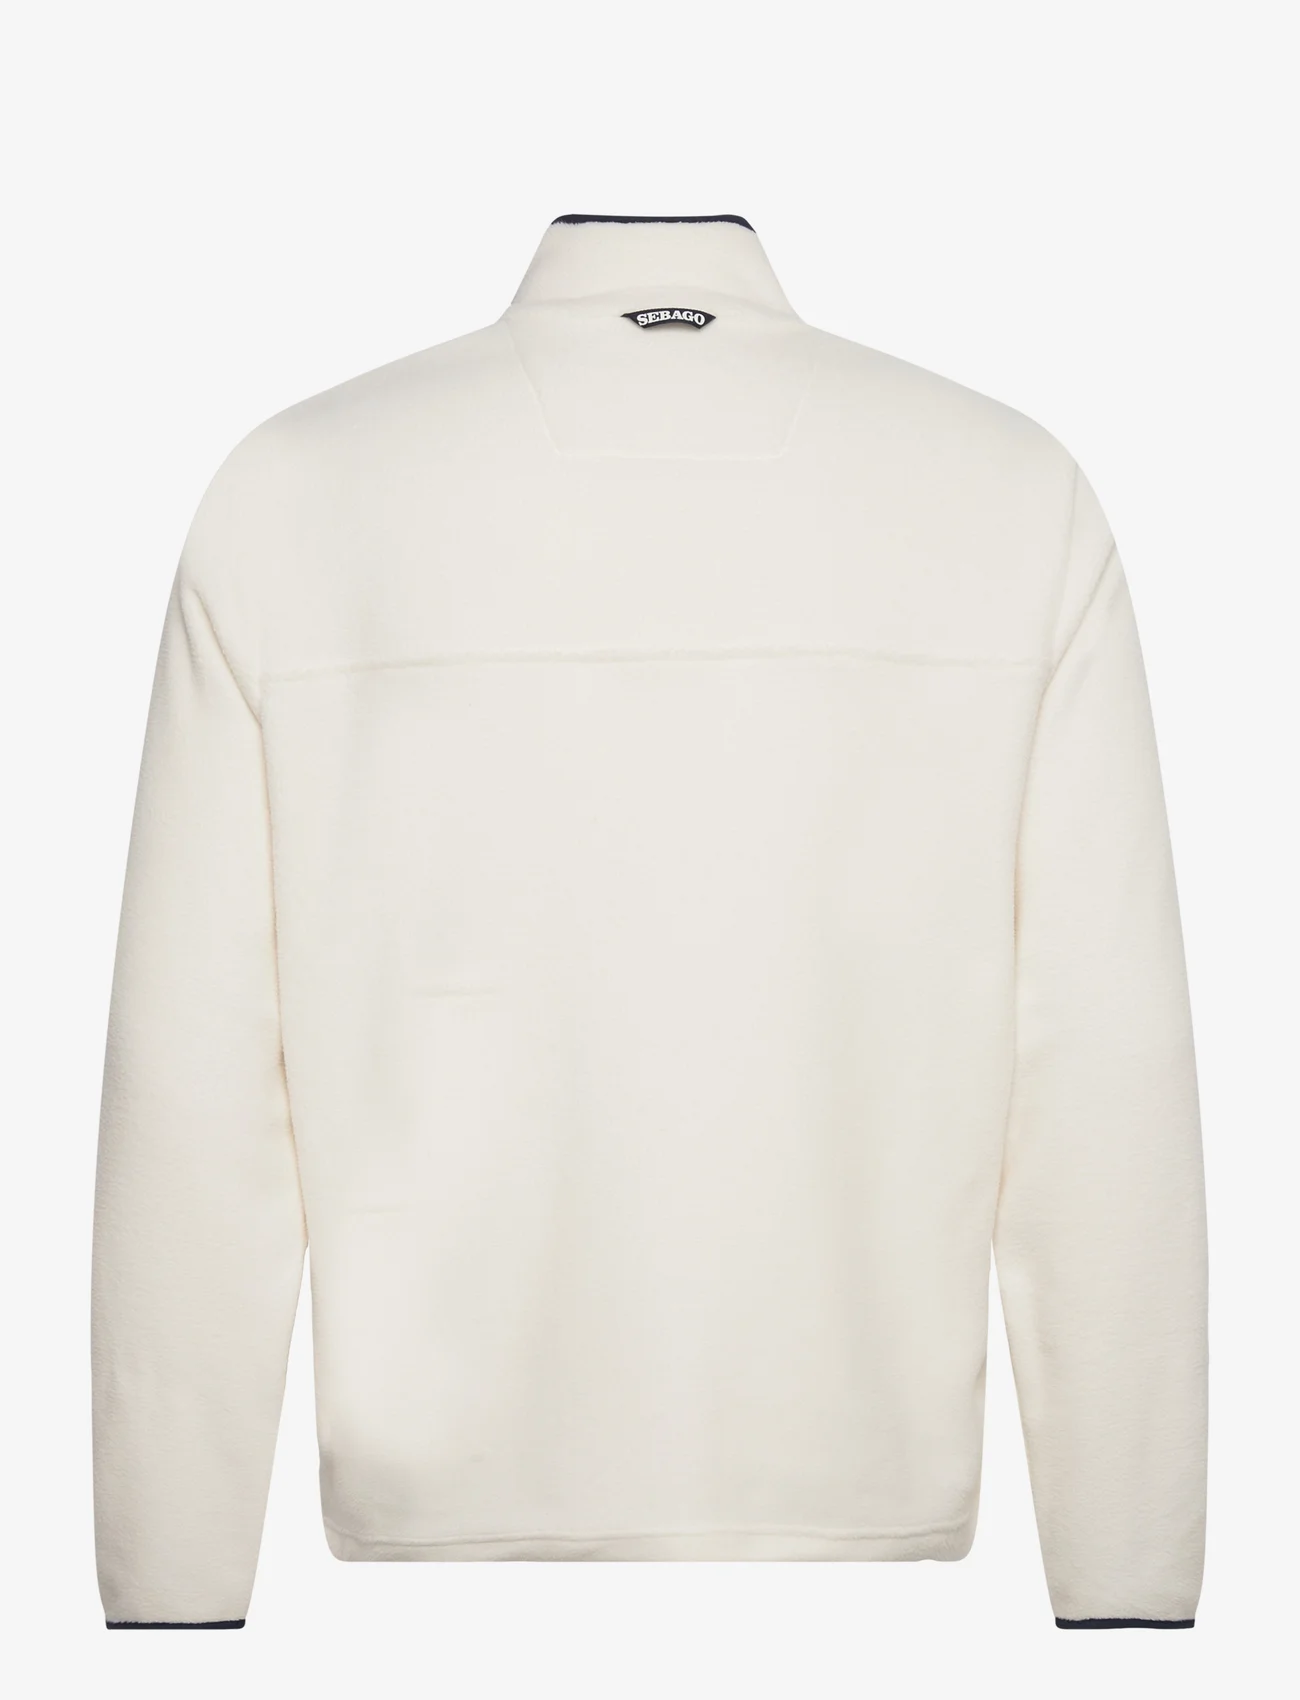 Sebago - Mens Fleece Jacket - white - 1